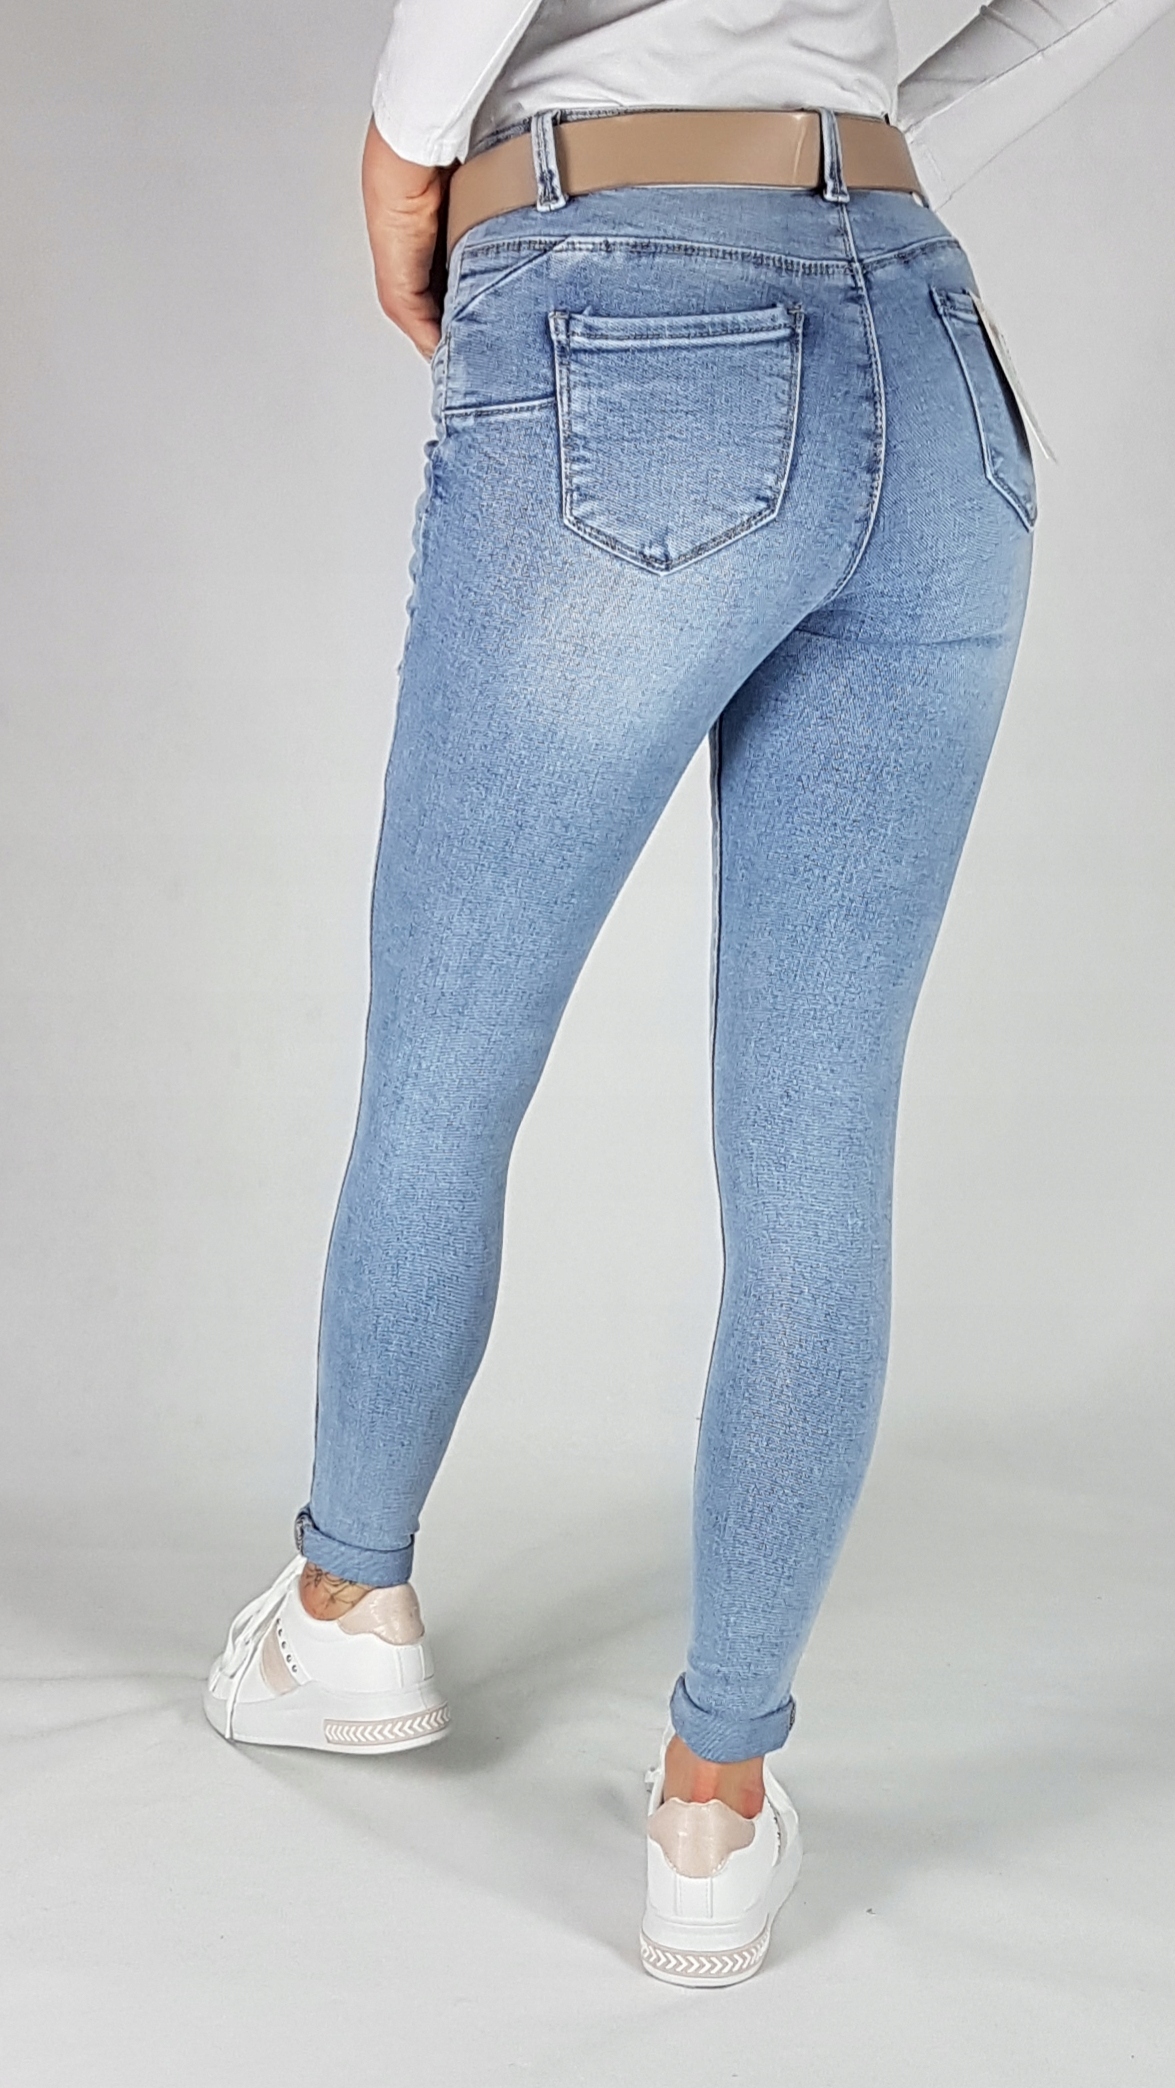 M. SARA джинсовые брюки с отверстиями размер s Mark other Brand